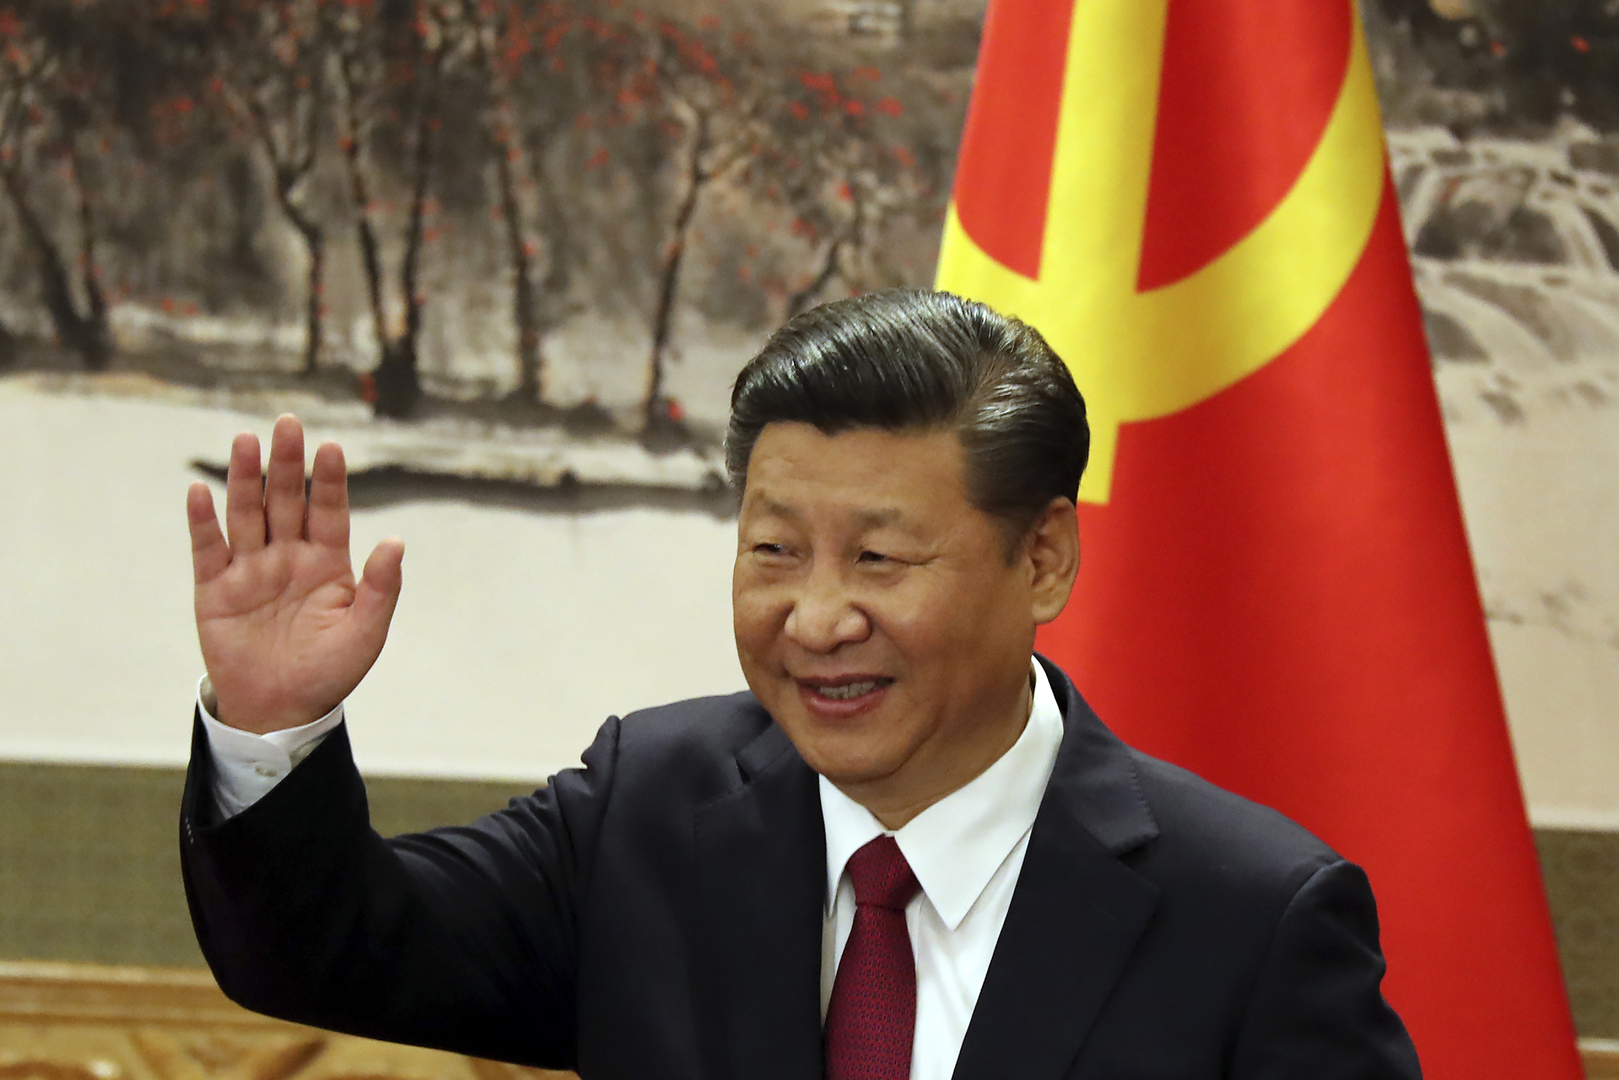 بكين: الرئيس الصيني سيحضر قمة منظمة شنغهاي للتعاون وسيزور كازاخستان وأوزبكستان